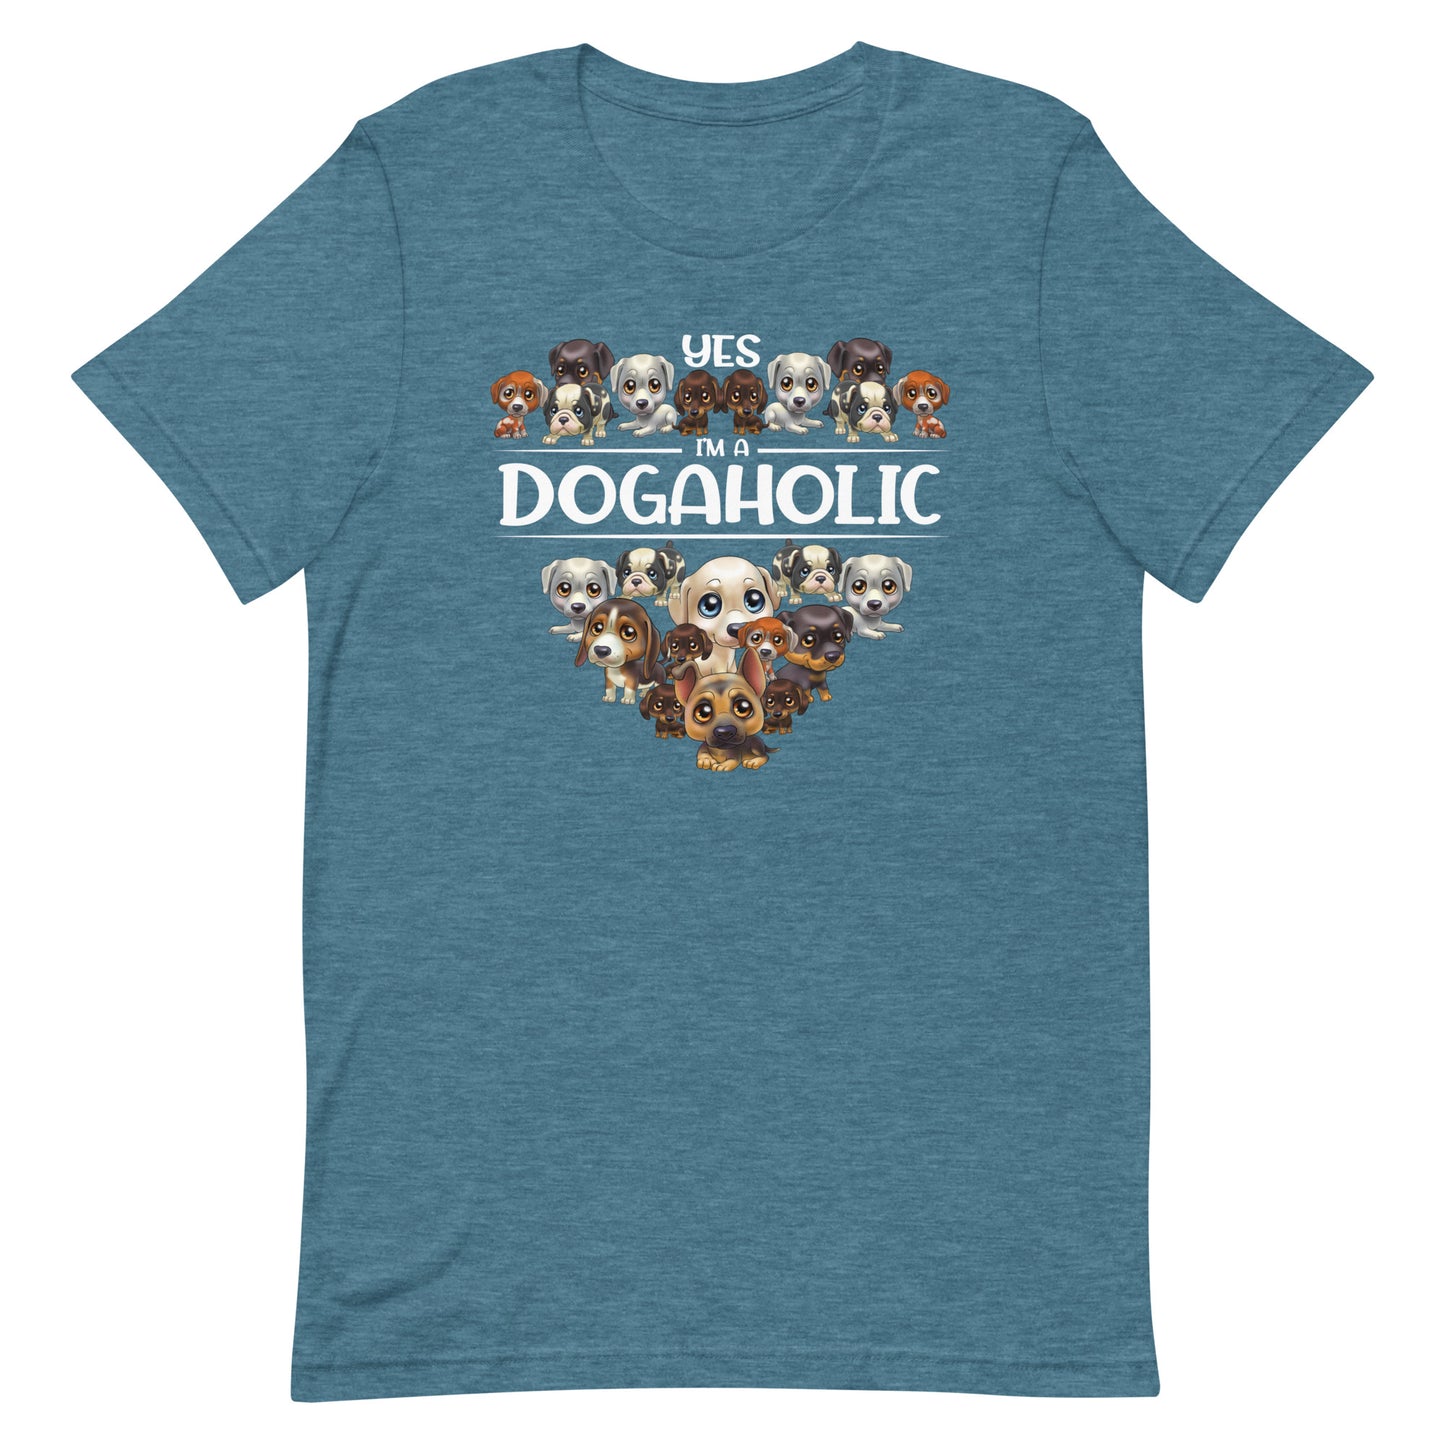 Yes I'M A Dogaholic T-Shirt